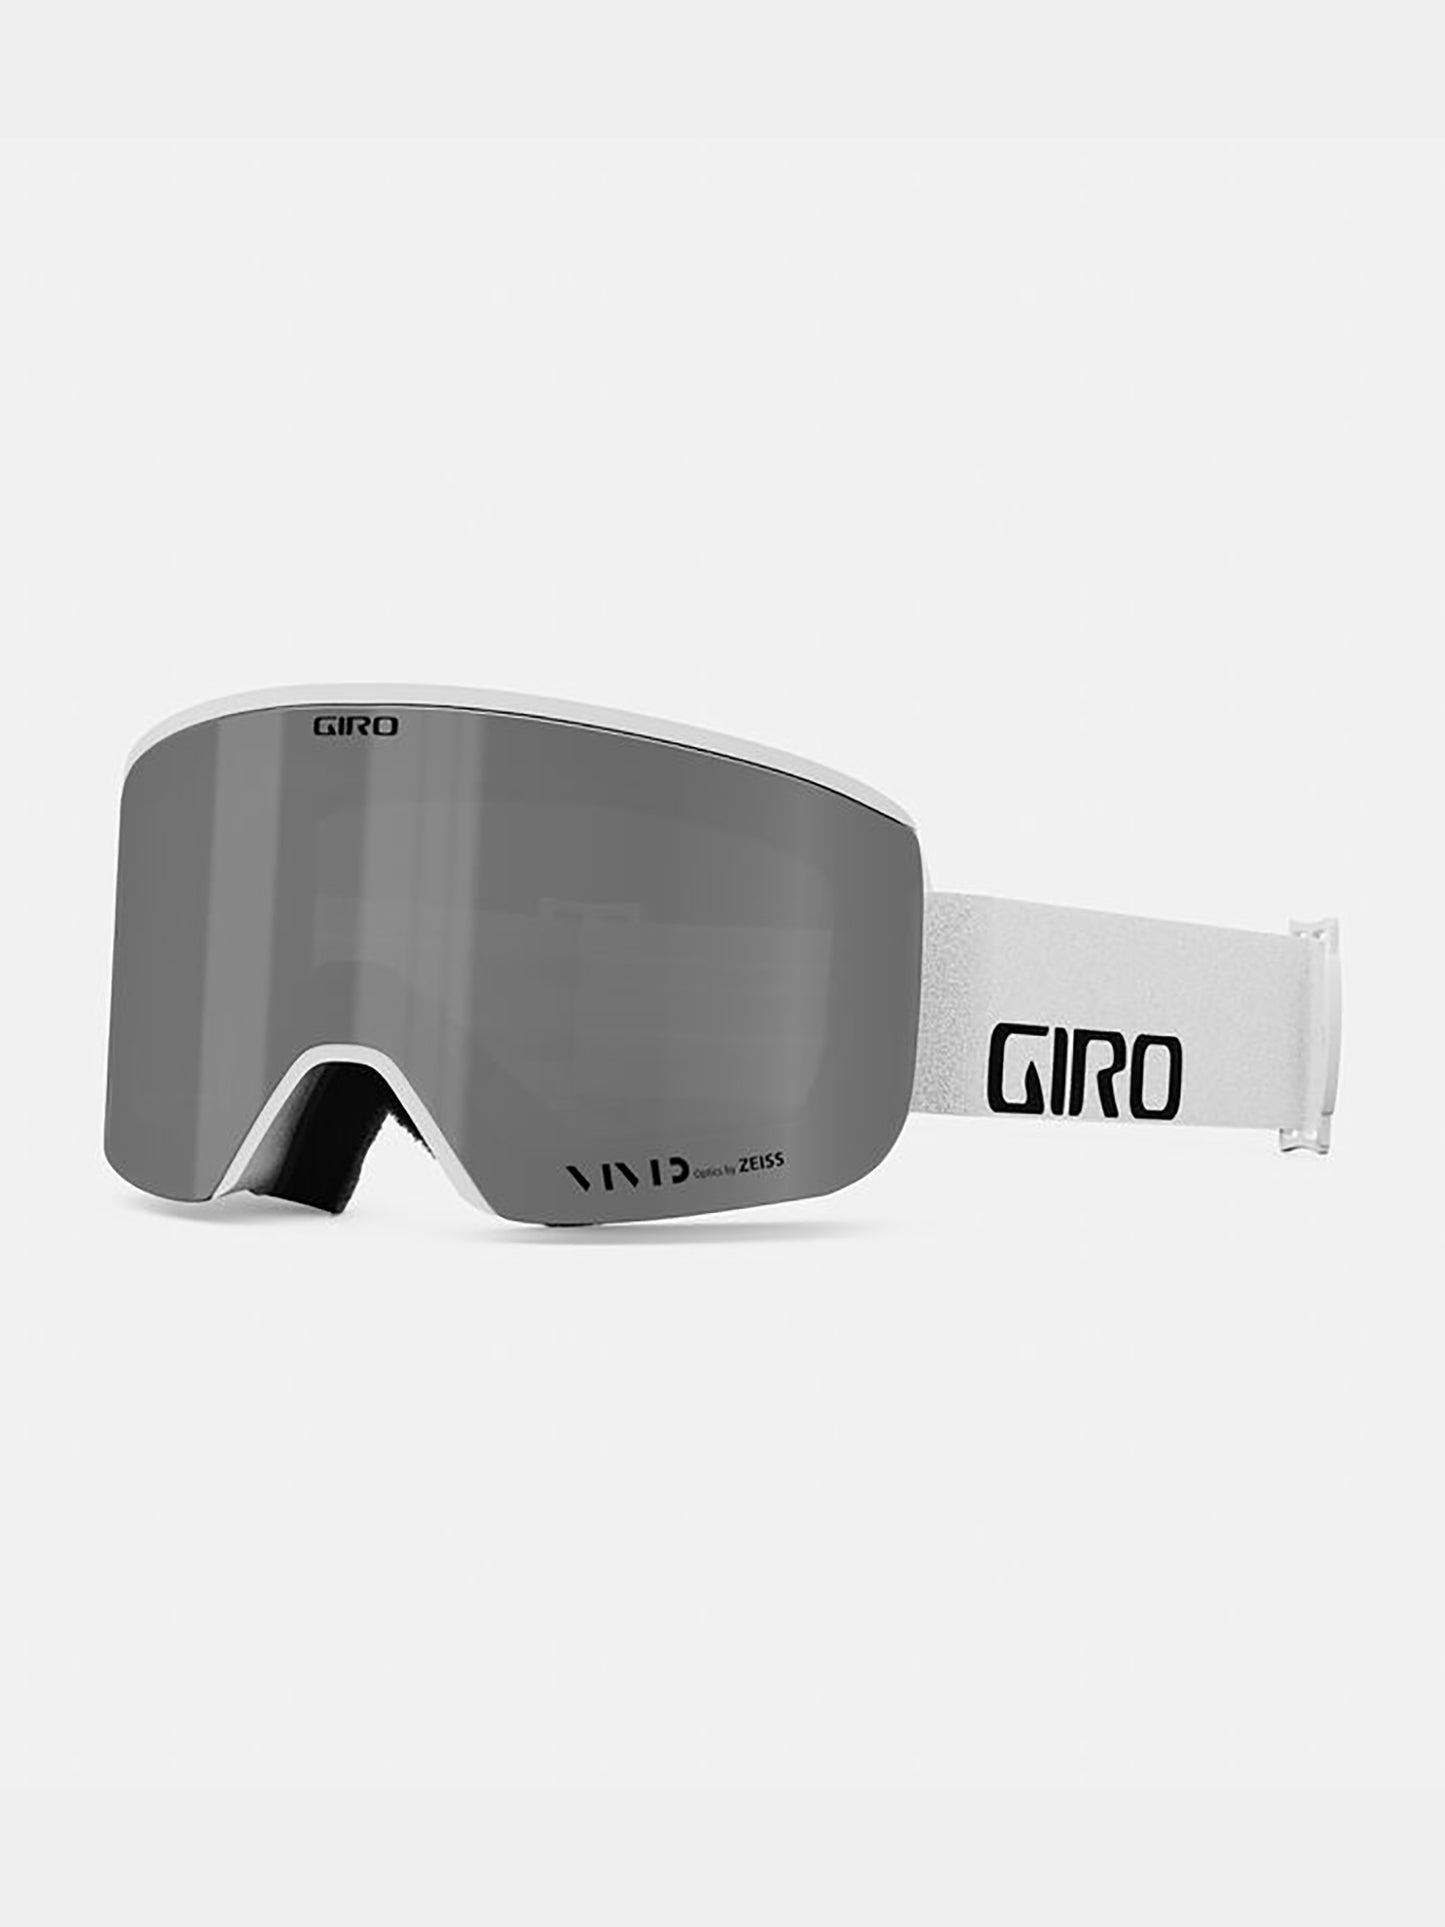 GIRO Axis Snow Goggle